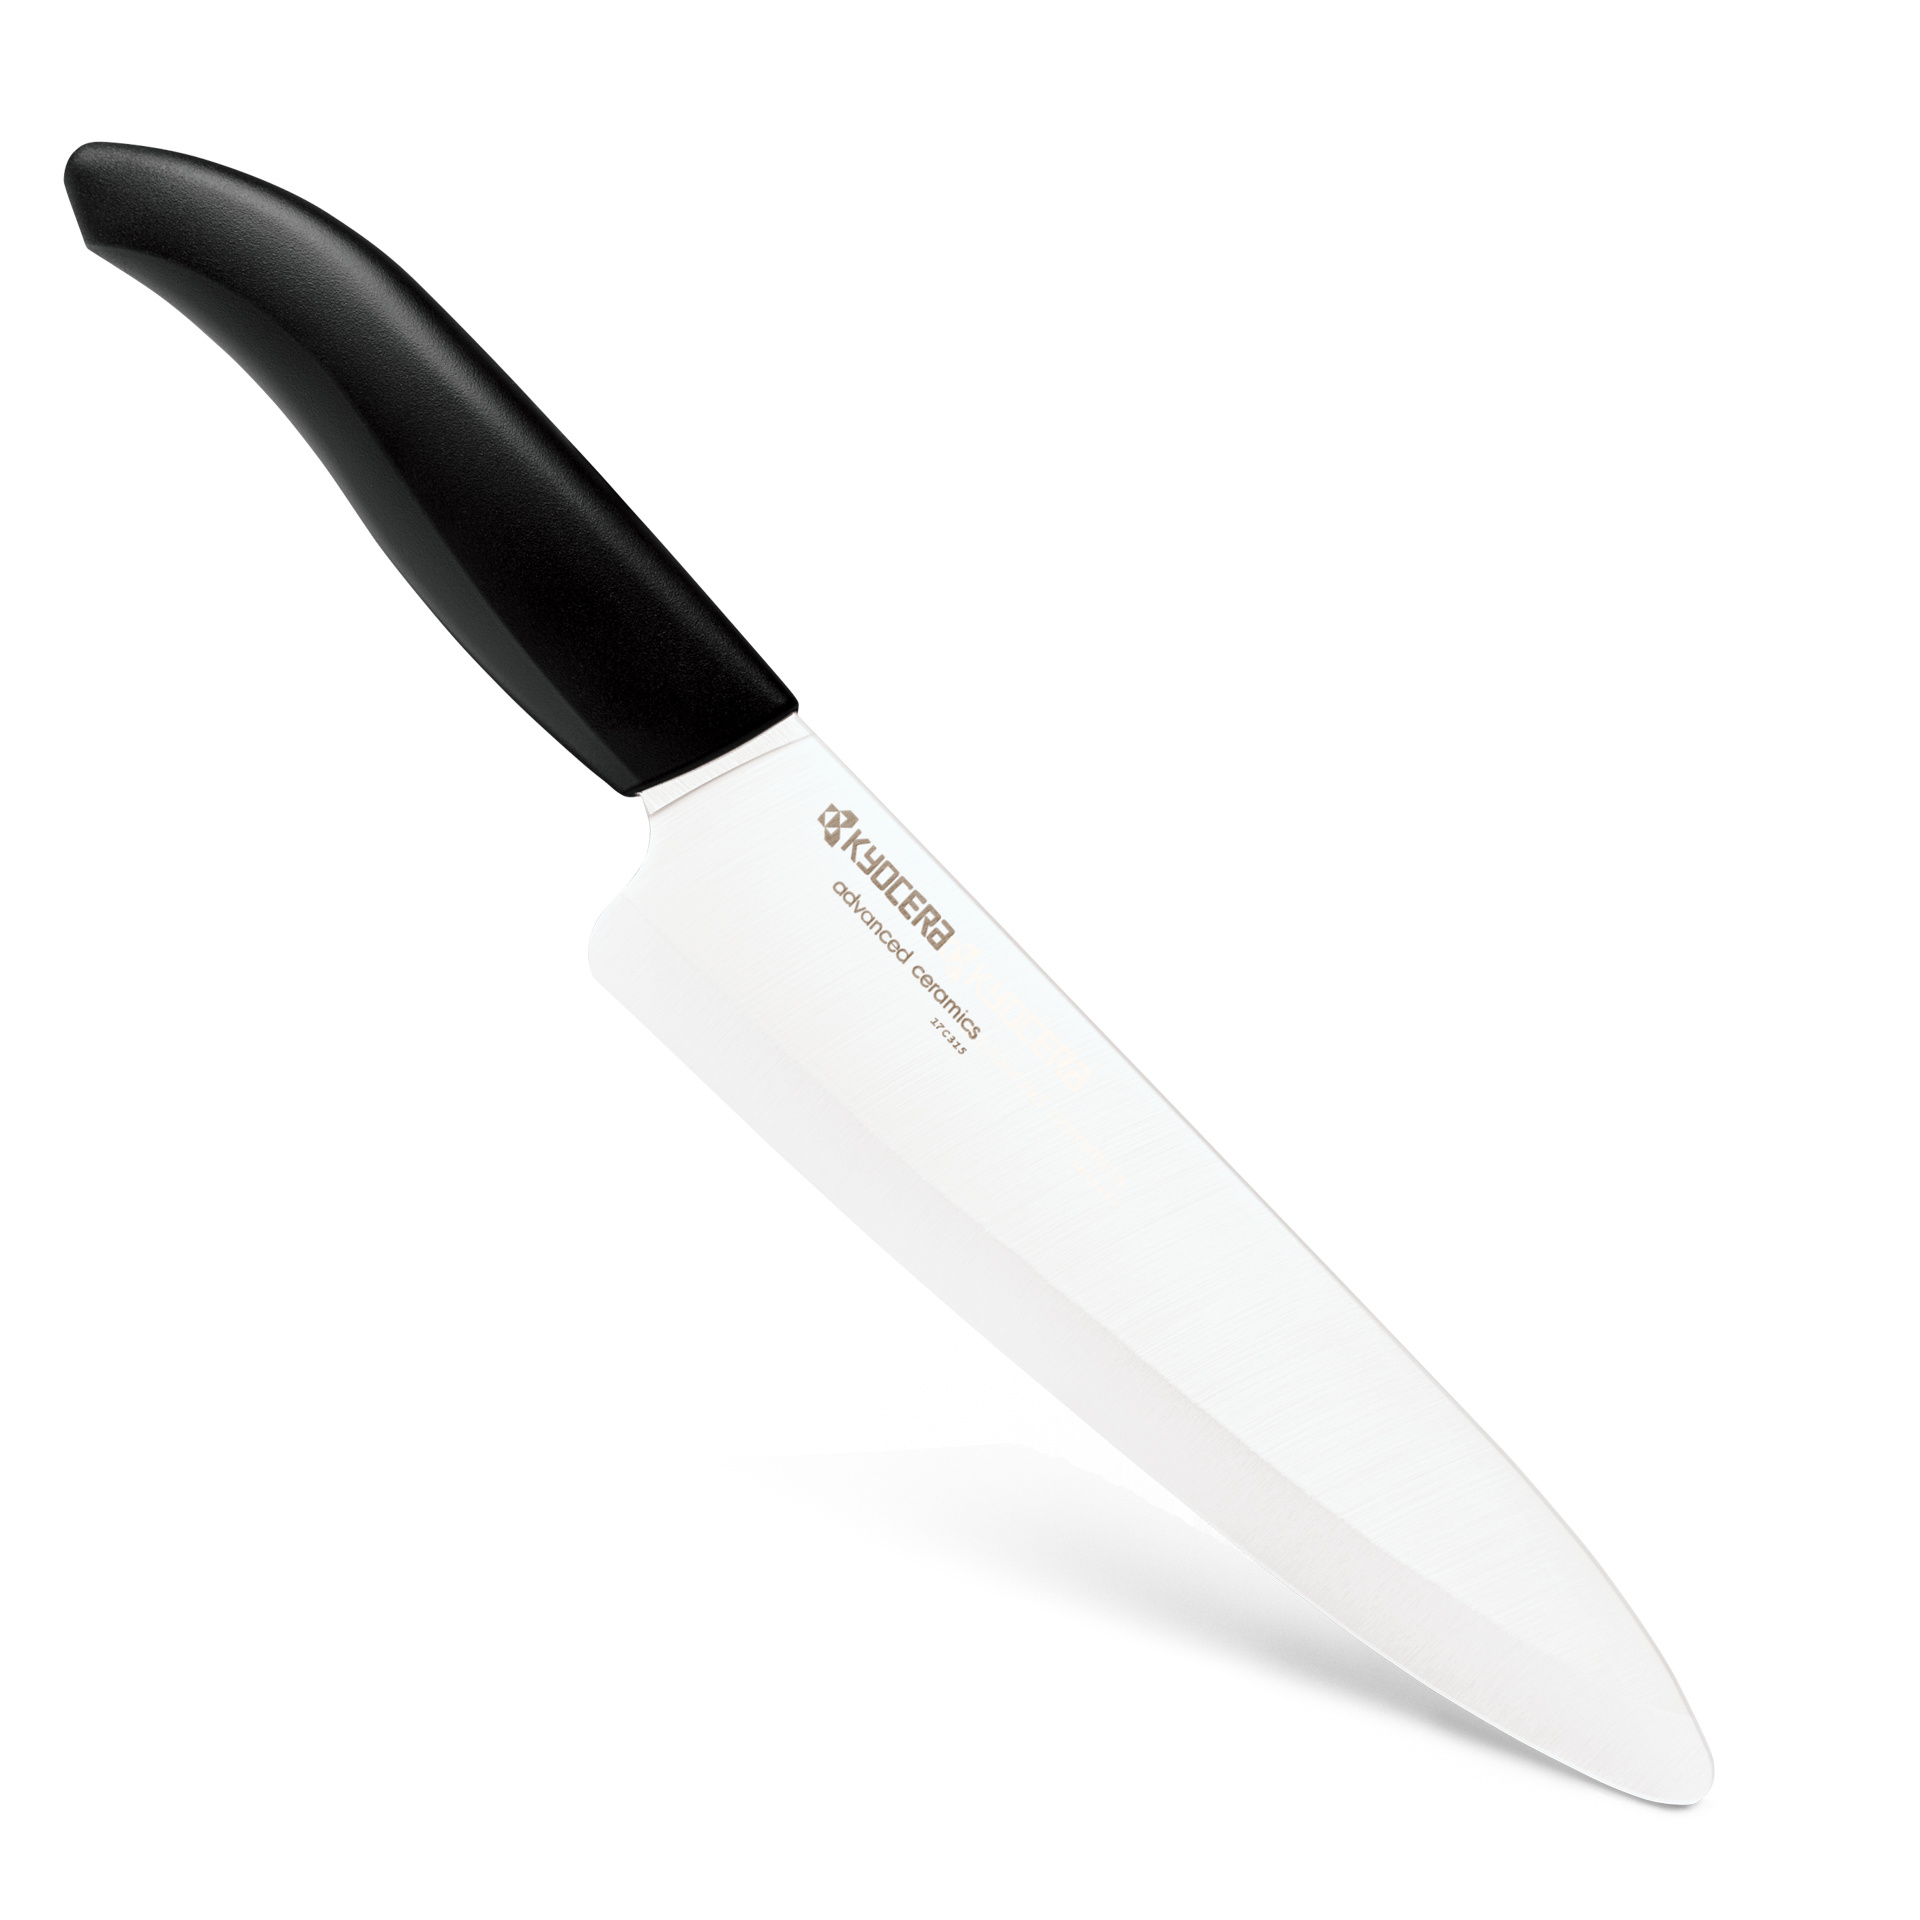 Kyocera Black Ceramic Santoku Knife - Whisk